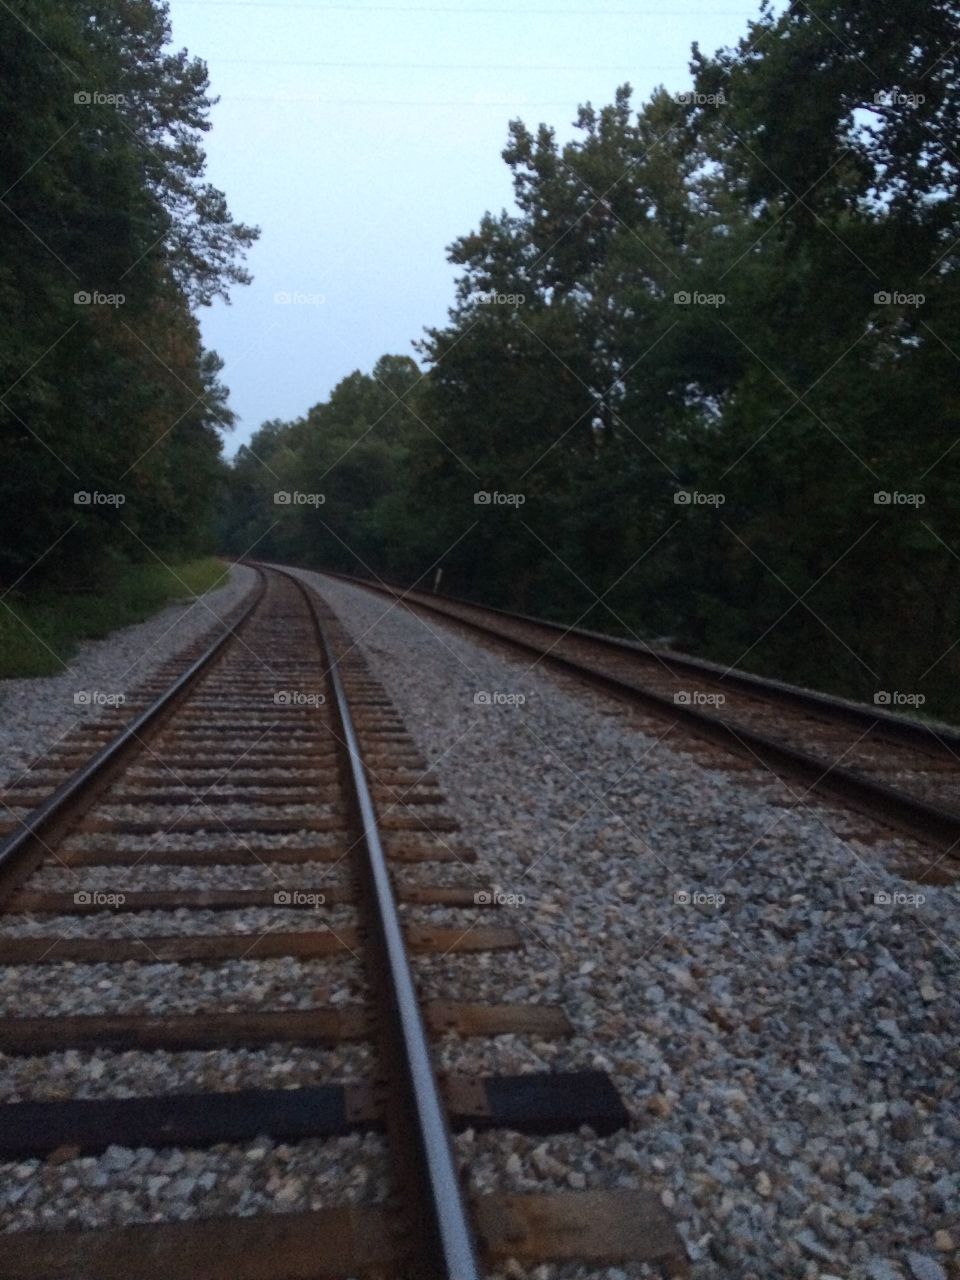 Railroad tracks in Dawson, PA